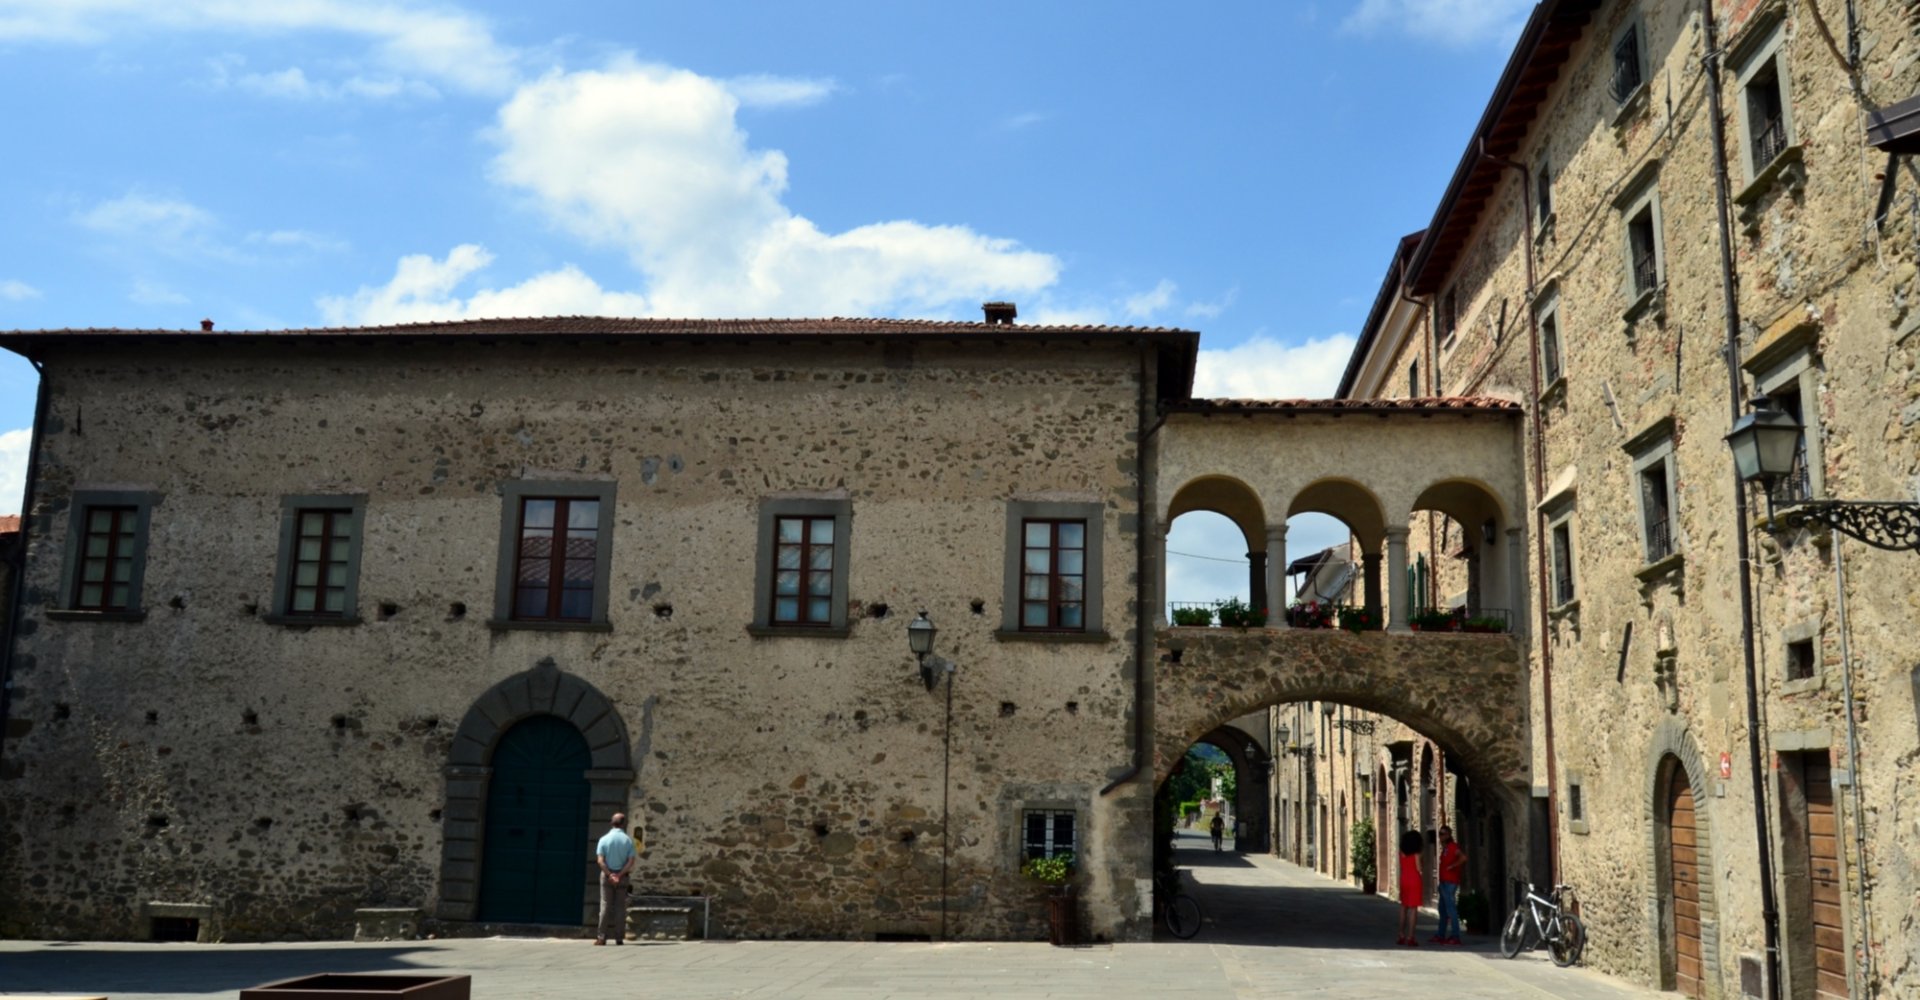 El pueblo de Filetto (Villafranca in Lunigiana)